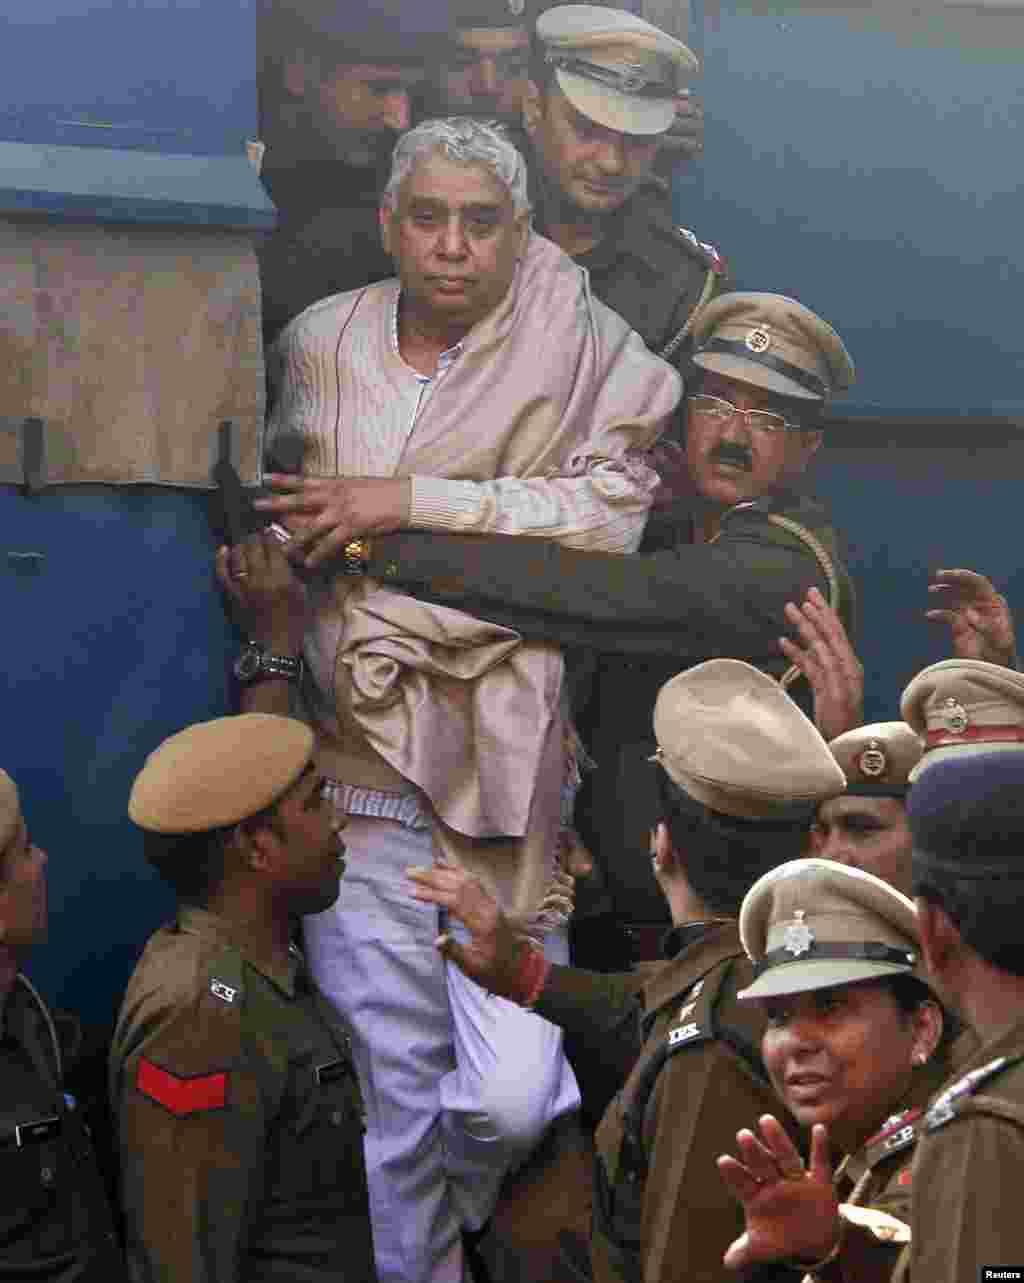 Satguru Rampaldži Maharadž posle hapšenja u indijskom gradu Čandigaru. On je optužen za vođenje pobune protiv države zajedno sa svojih 450 pristalica. 